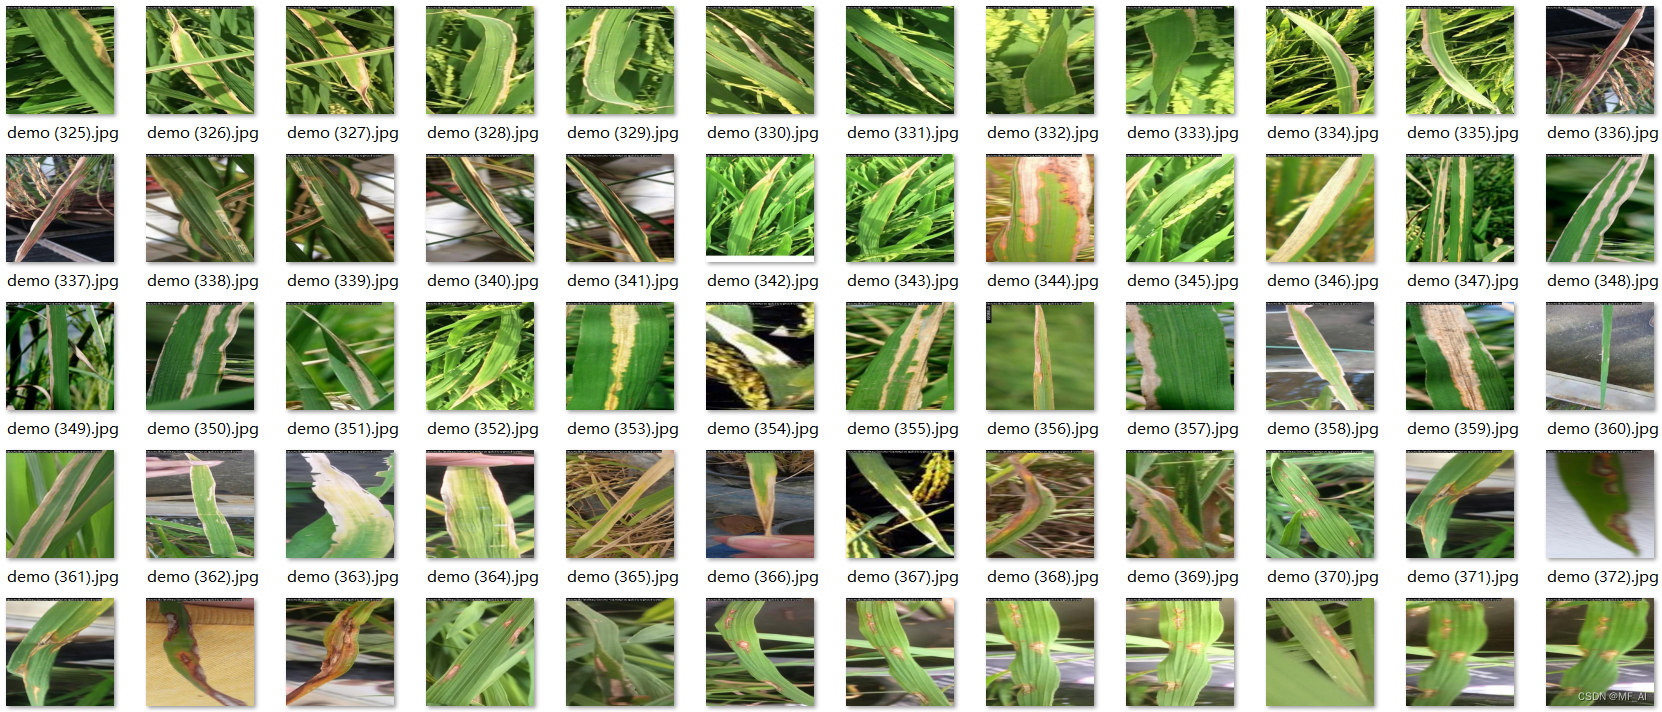 植物病害识别：YOLO水稻病害识别/分类数据集（2000多张，2个类别，yolo标注）